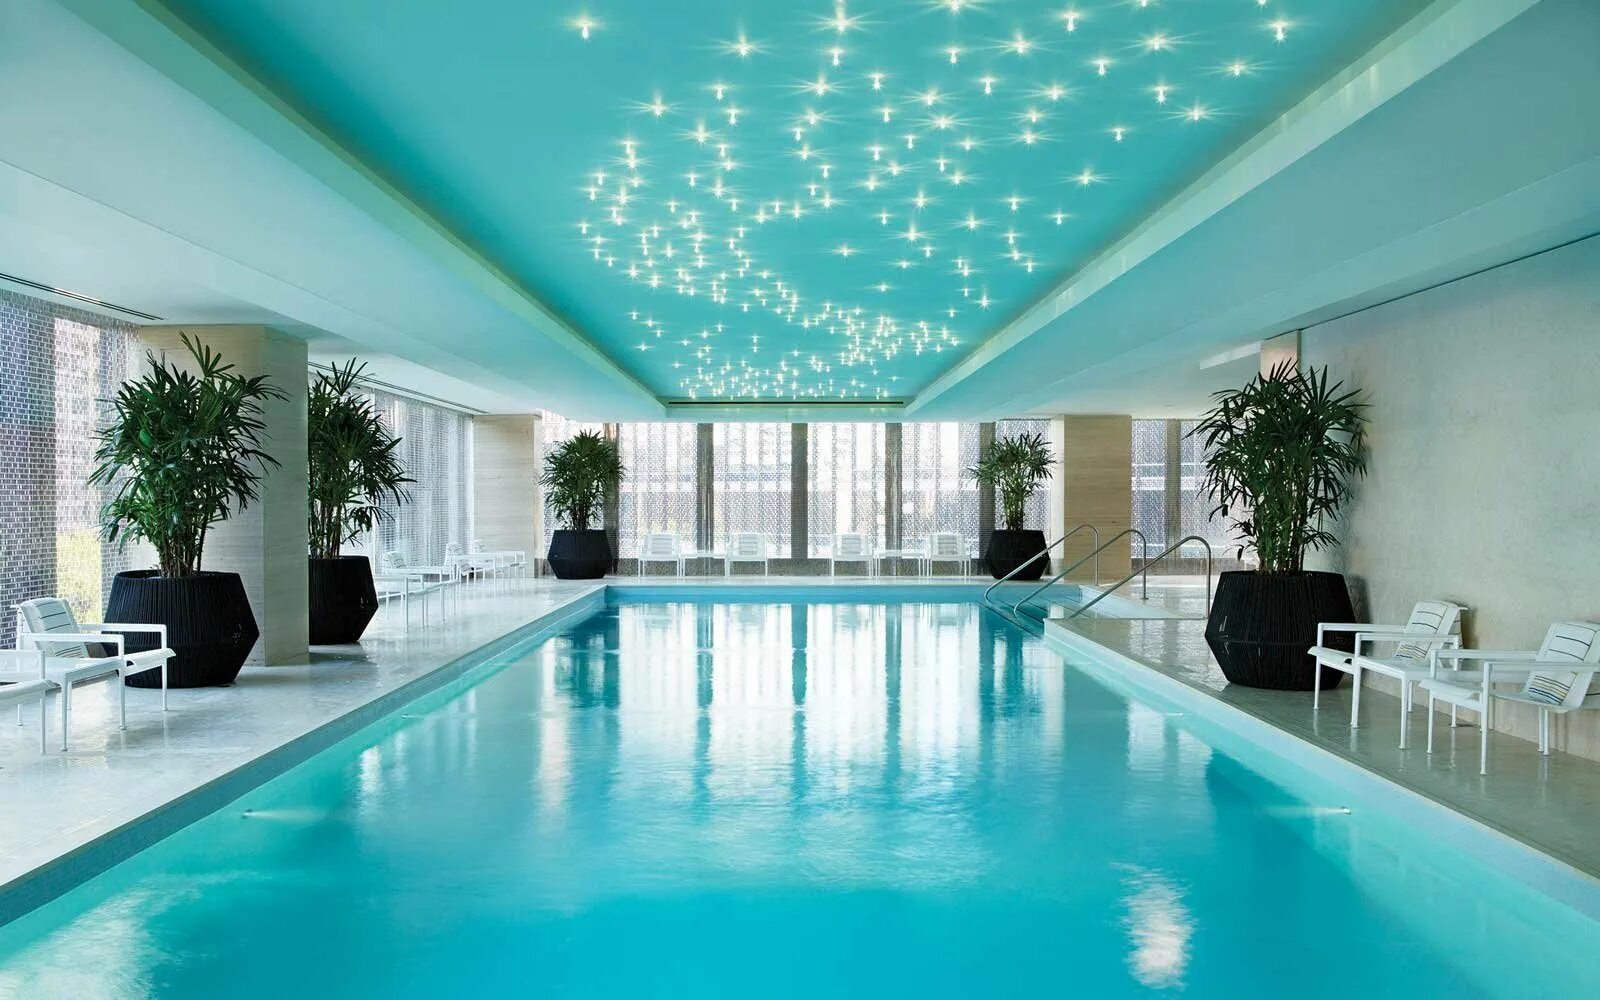 Сток бассейна озер. Бассейн отель «Hotel Kämp» в Хельсинки. Красивый бассейн. Большой красивый бассейн. Бассейн в доме.